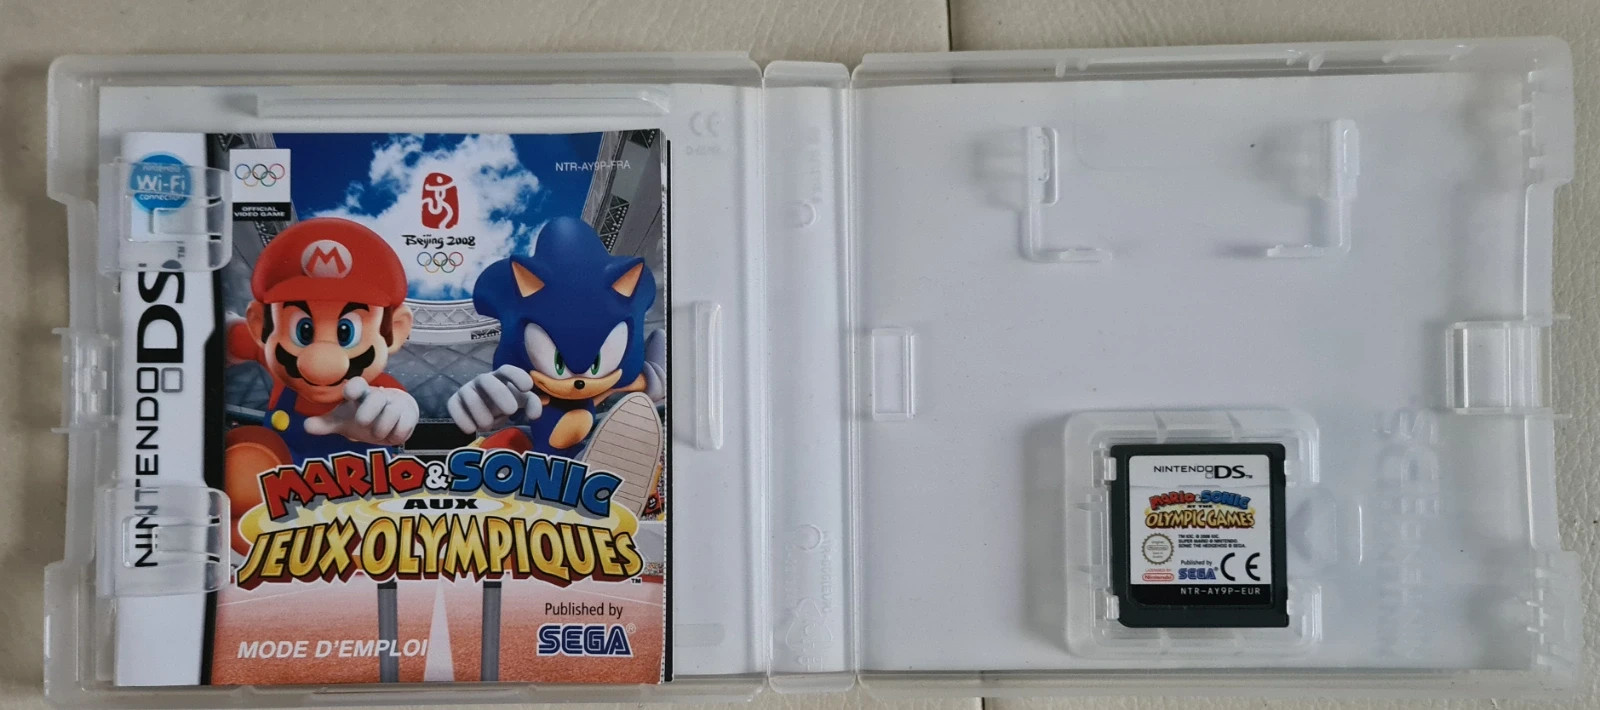 Mario et Sonic aux Jeux Olympiques [Jeu vidéo Nintendo DS]